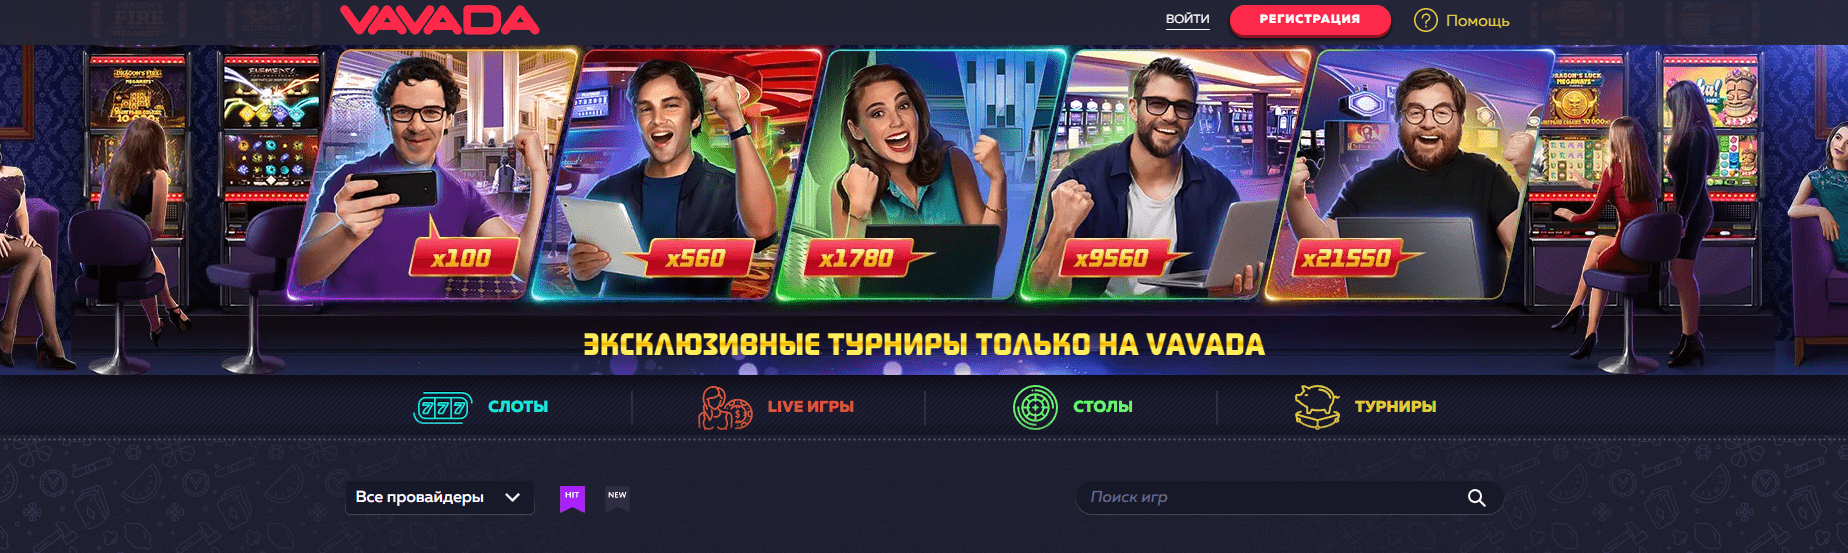 Casino Vavada official website